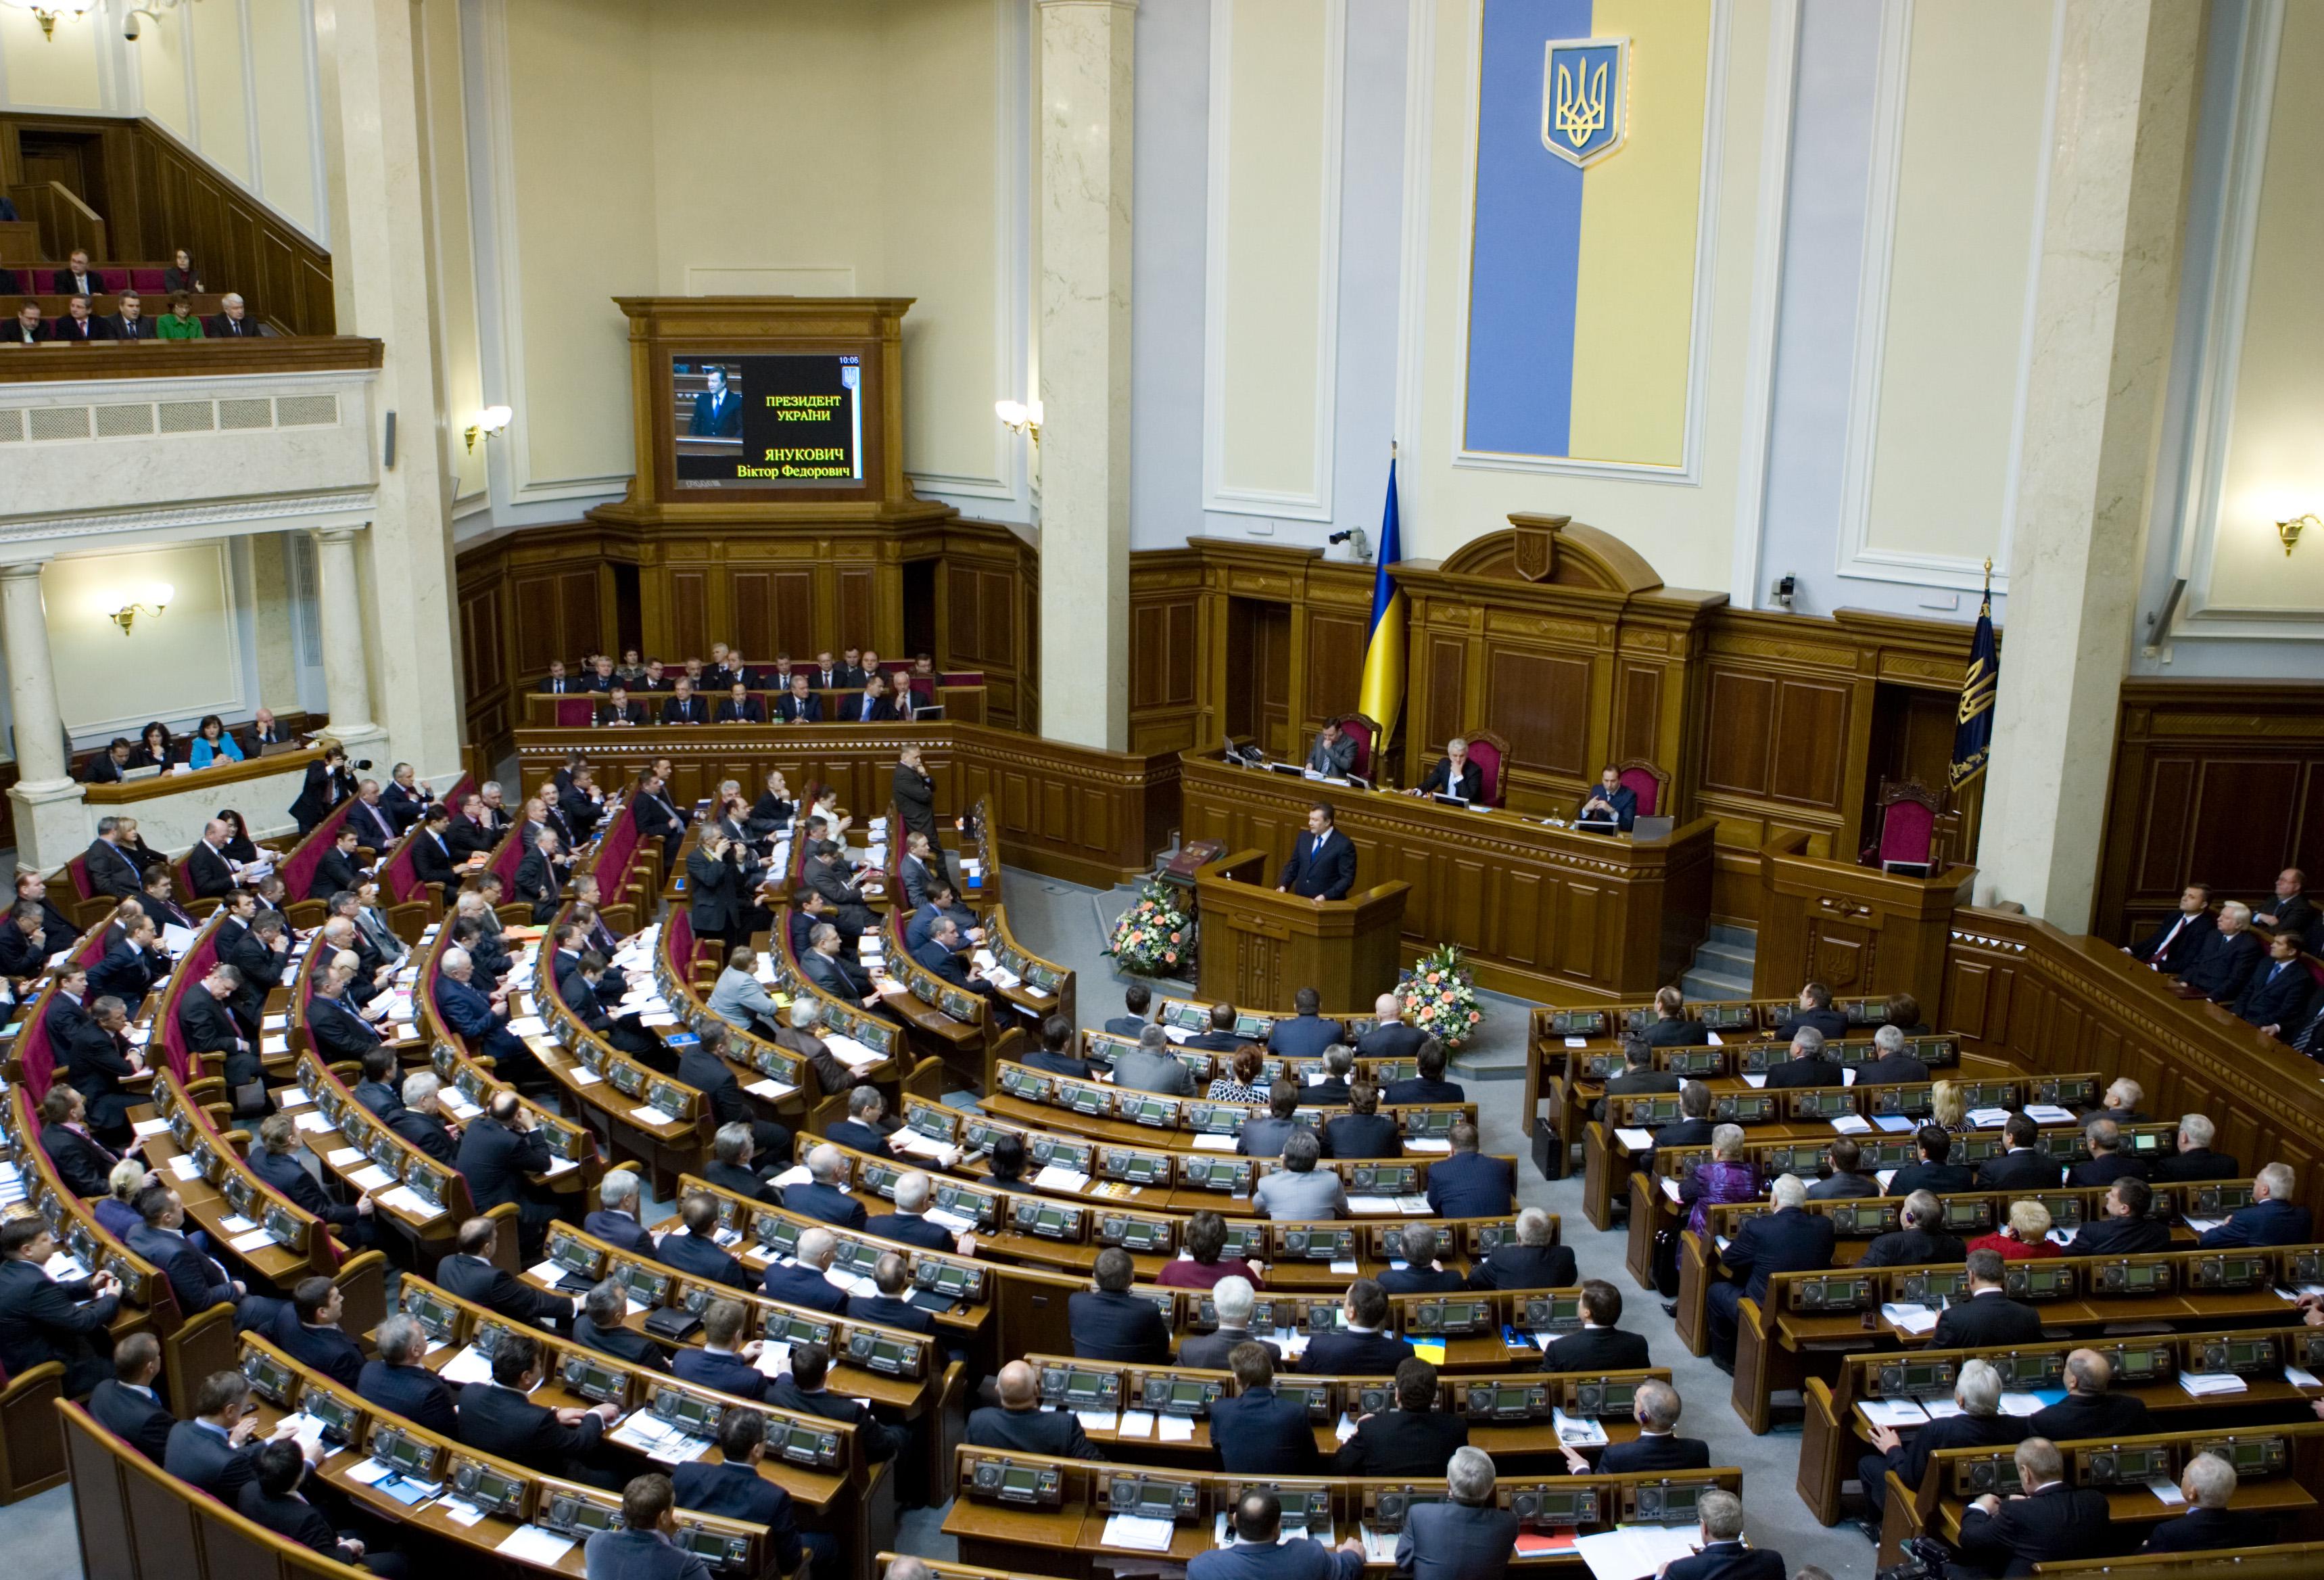 Верховная Рада Украина приняла закон «О Национальной полиции» (регистрационный № 2822).

